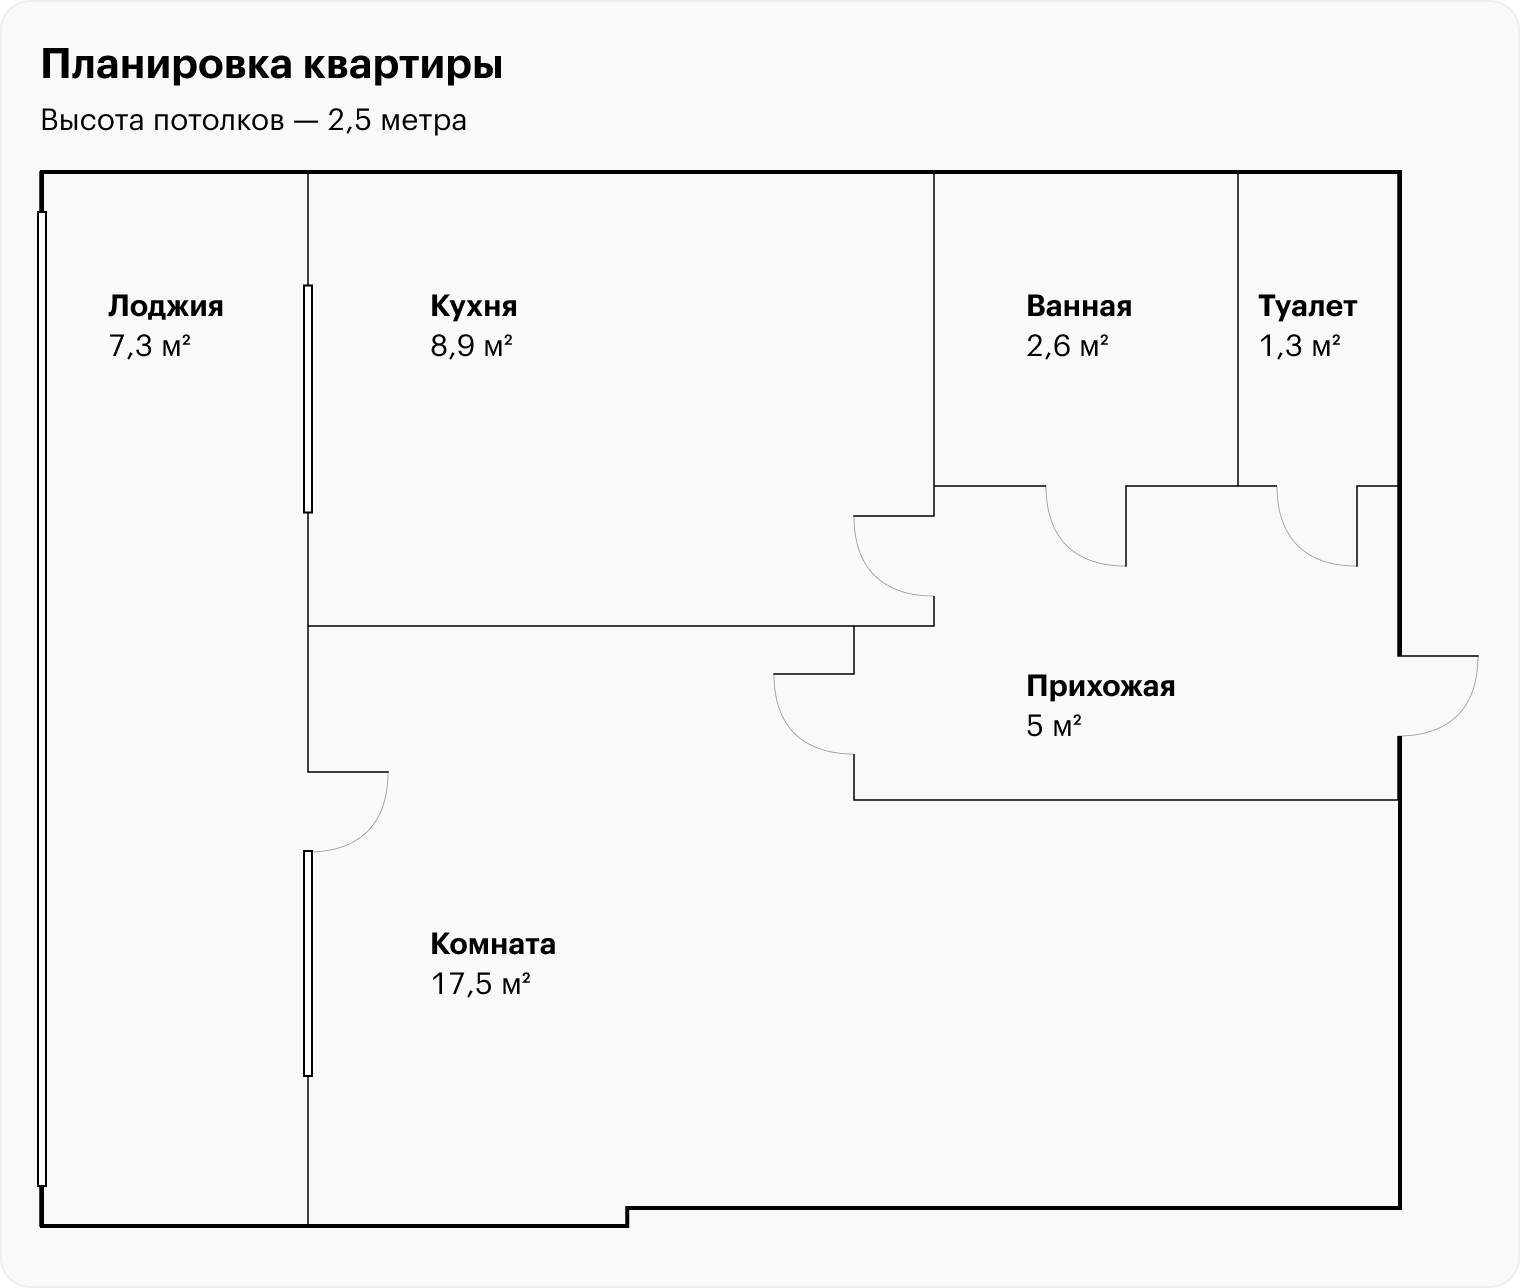 Планировка квартиры: типичная однушка квадратной формы с отдельным санузлом и длинной лоджией. Высота потолков — 2,5 м